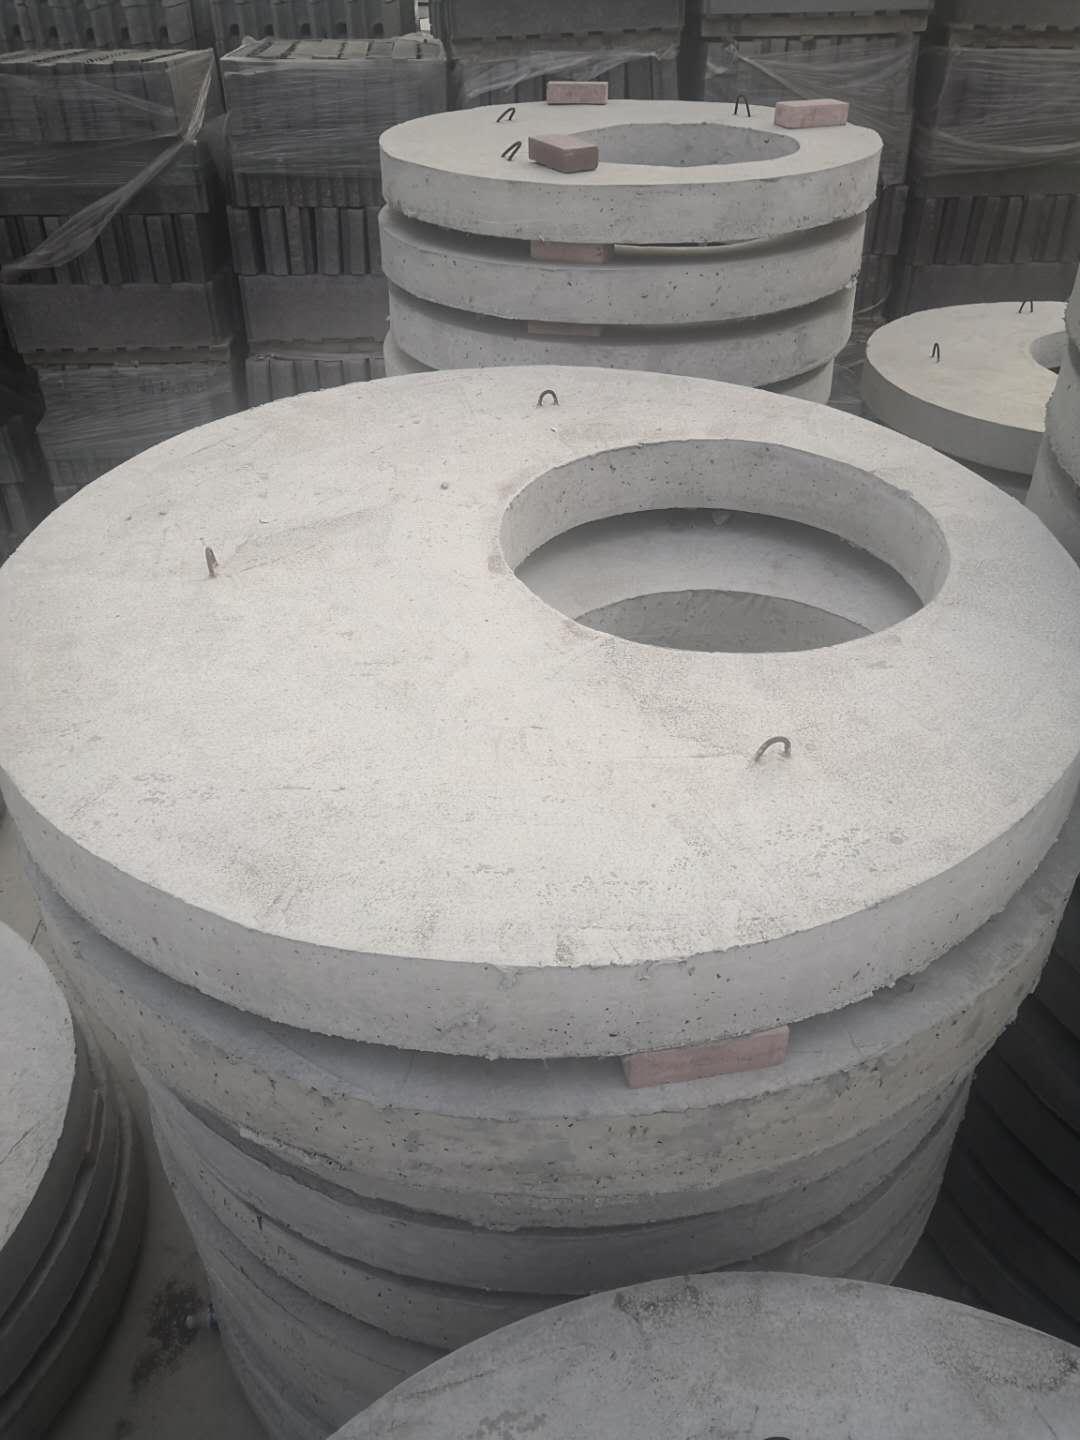 砌井模块 北京砌井模块 生产砌井模块 供货砌井模块